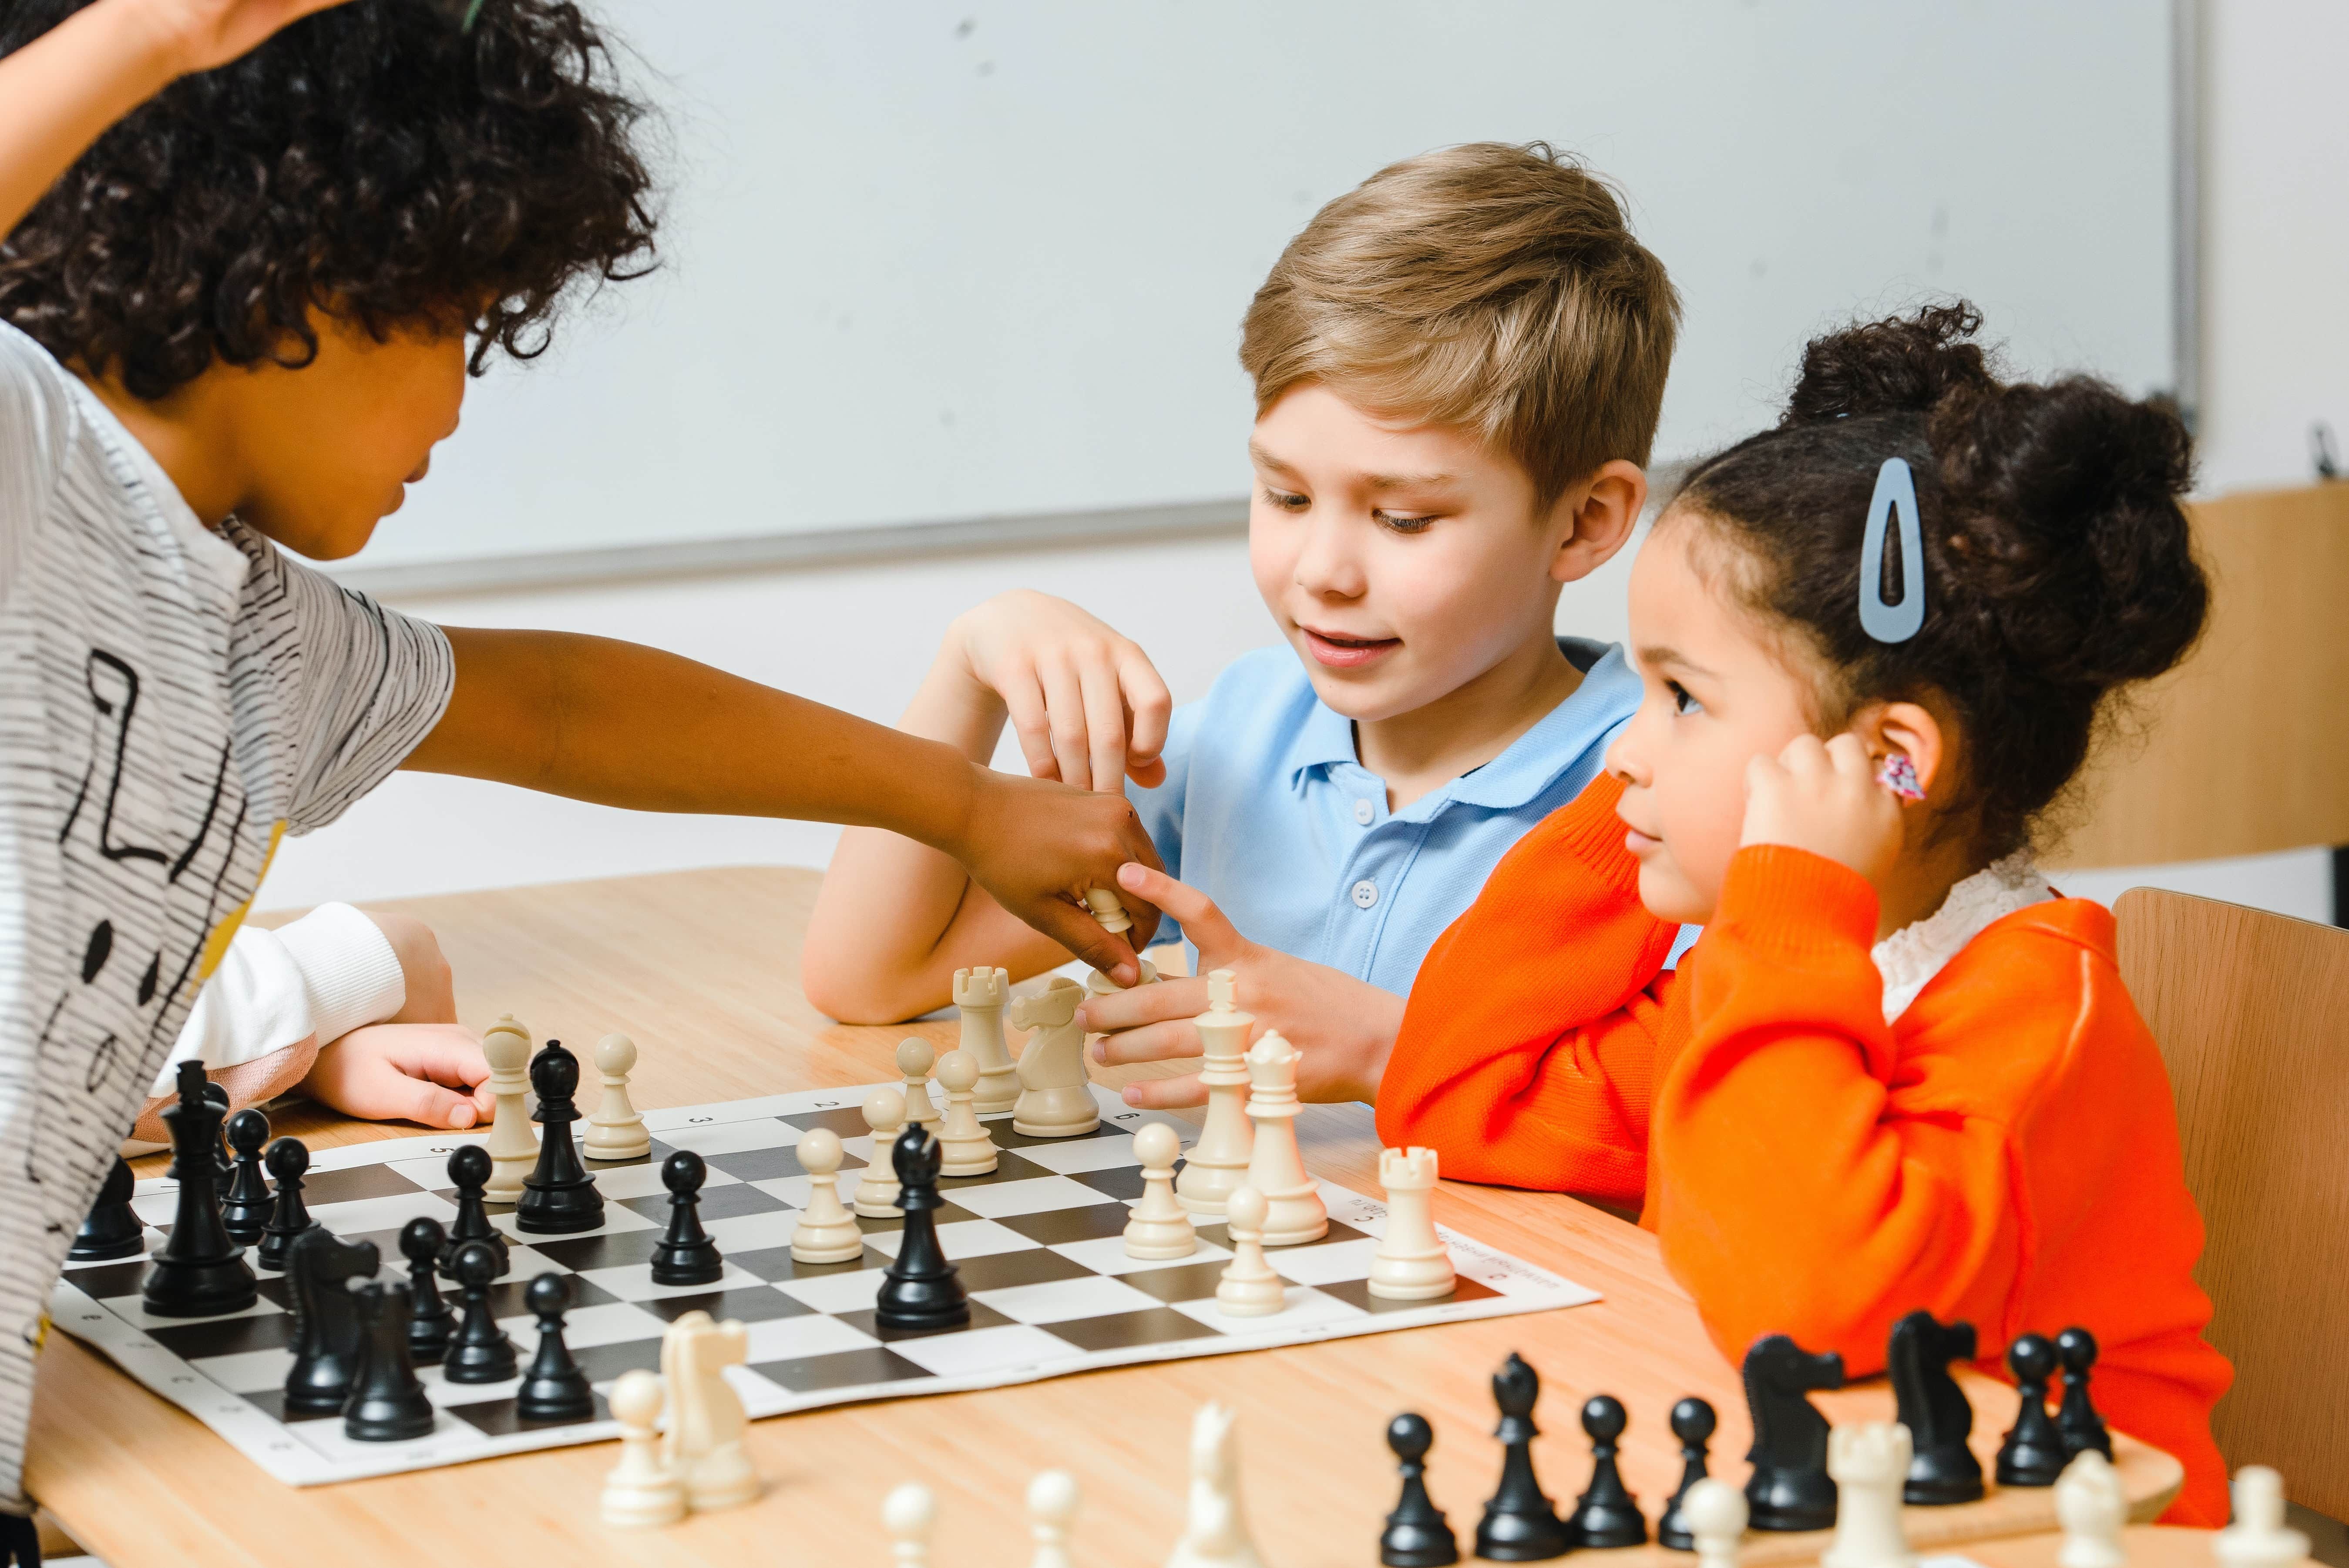 ajedrez los beneficios del juego deporte ciencia